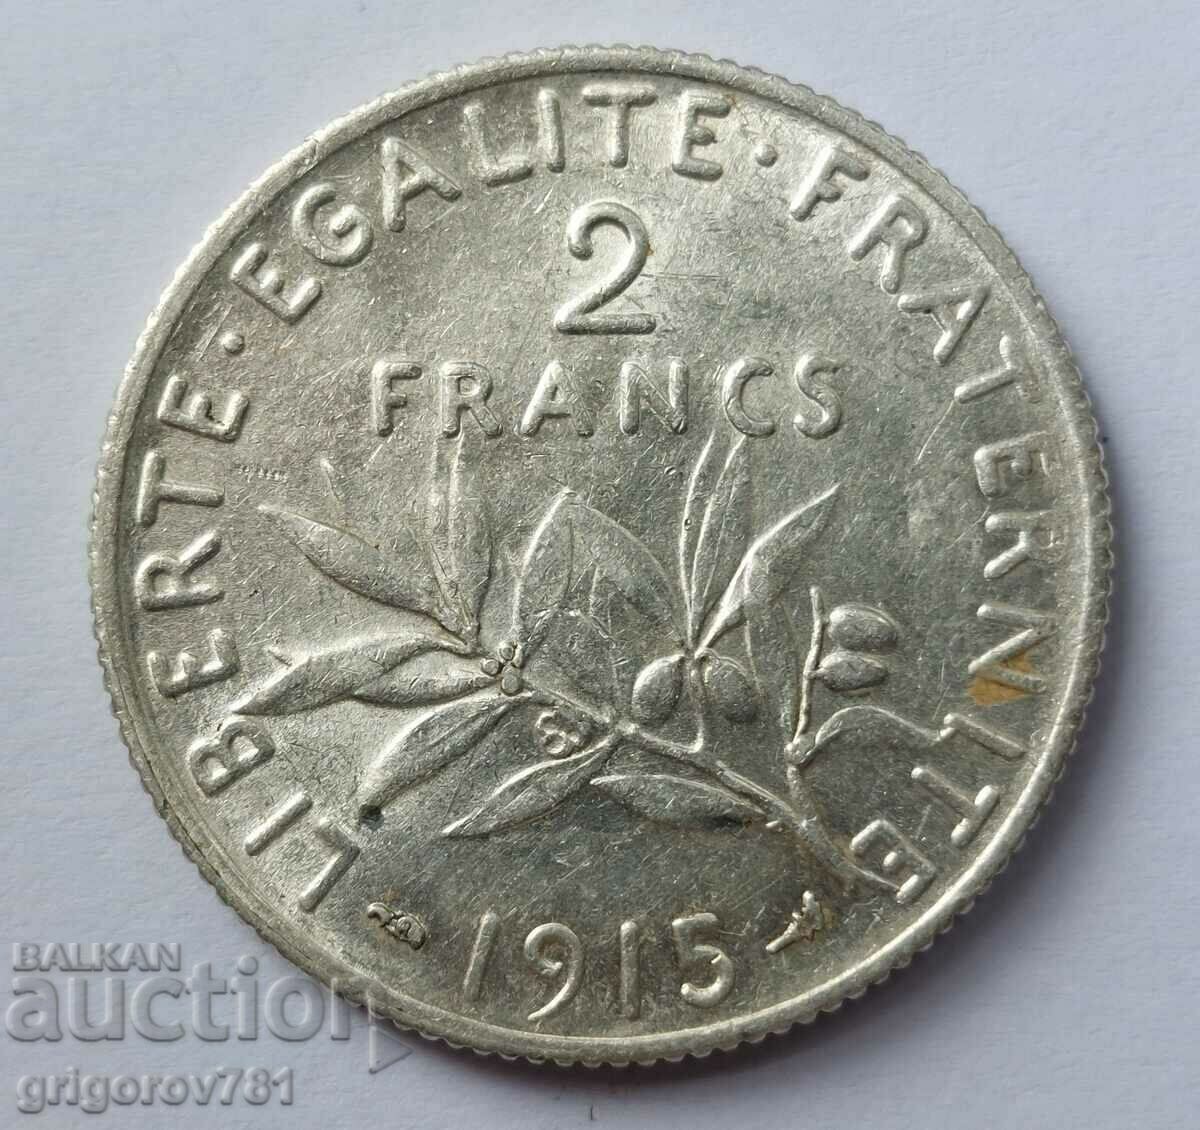 Ασημένιο 2 φράγκα Γαλλία 1915 - ασημένιο νόμισμα №2